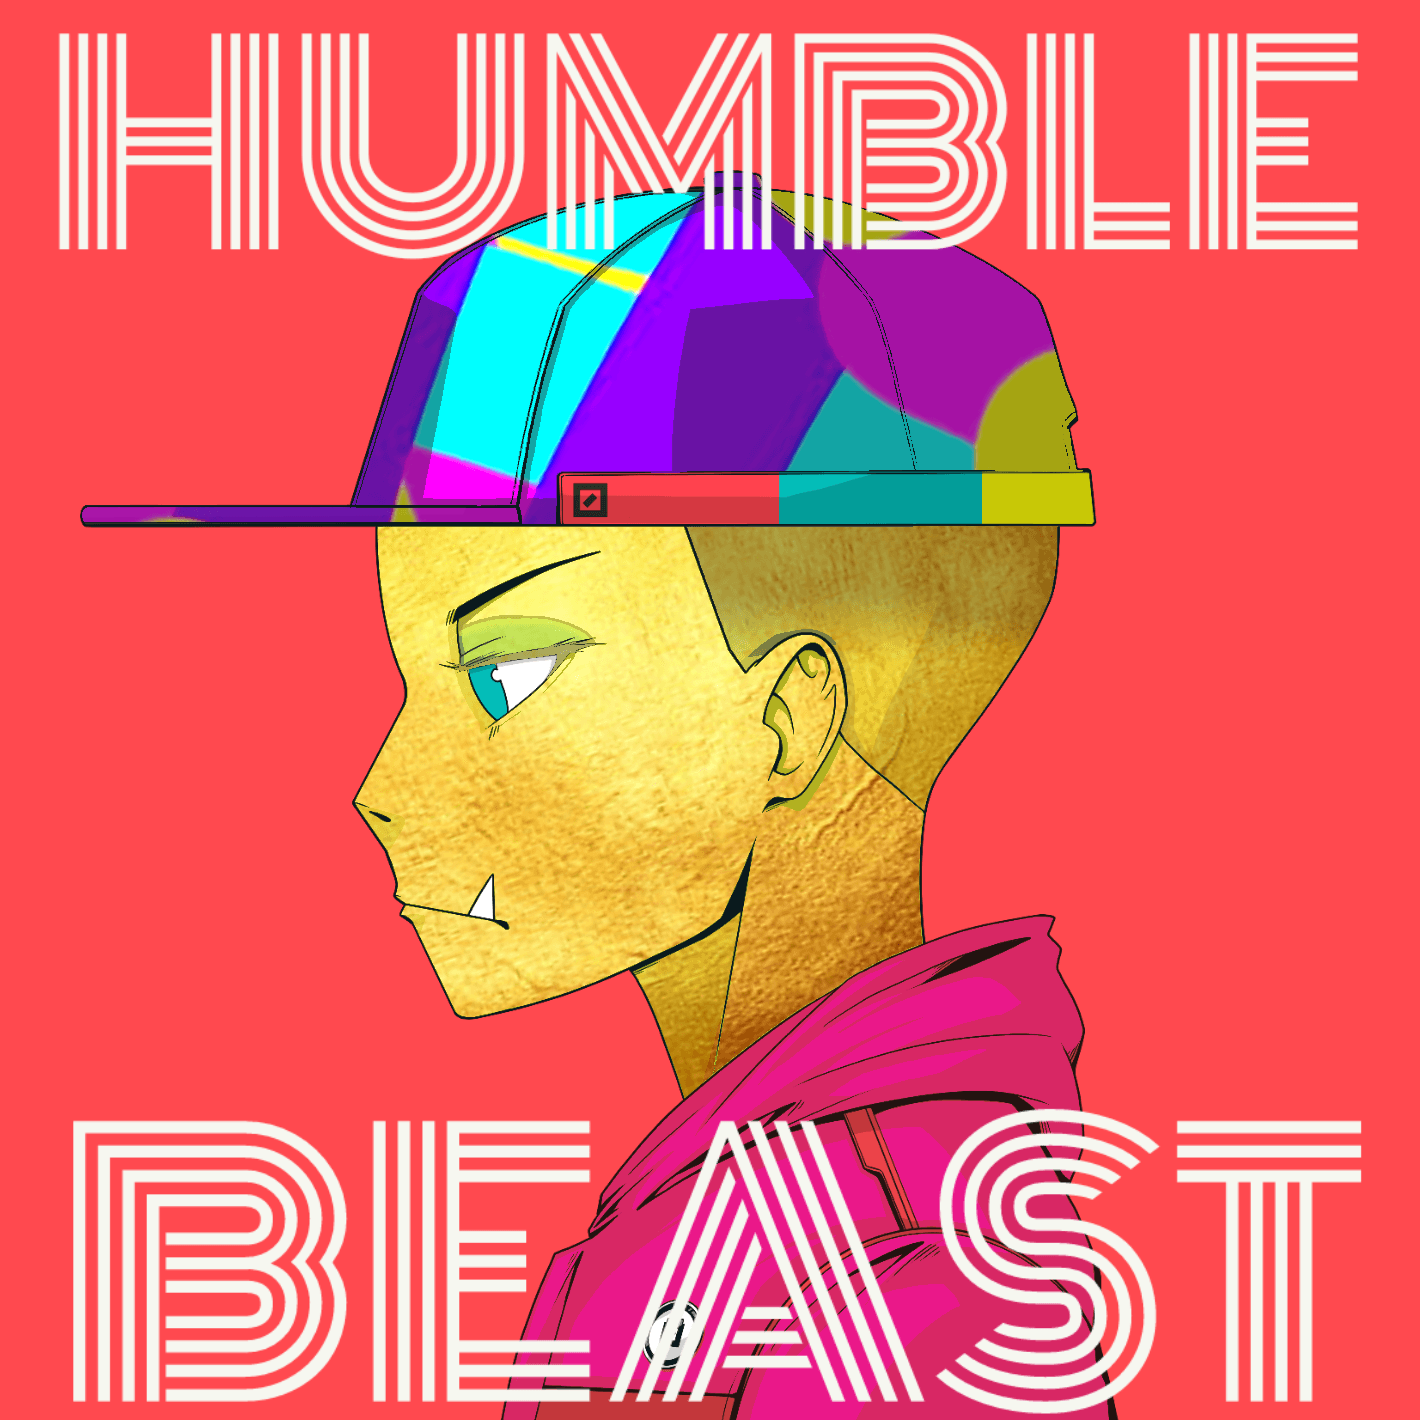 Humblebeast11 banner